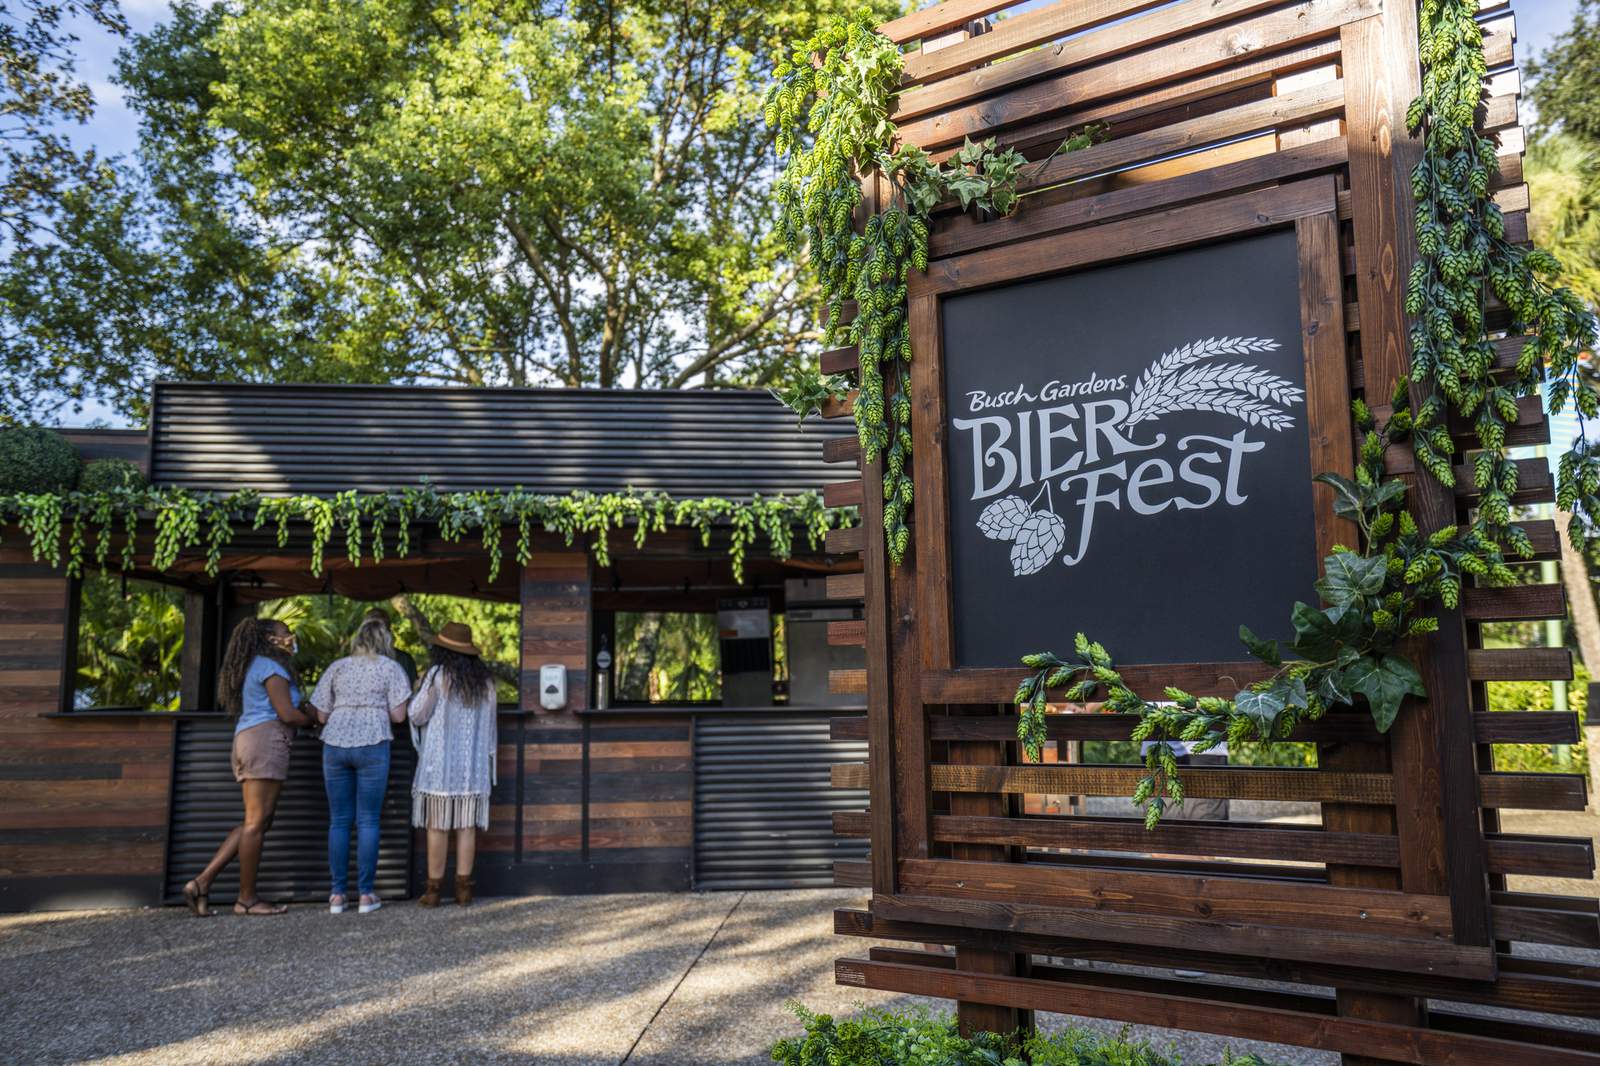 Busch Gardens Tampa Bay announces 2021 Fun Card bonus, seasonal bier fest